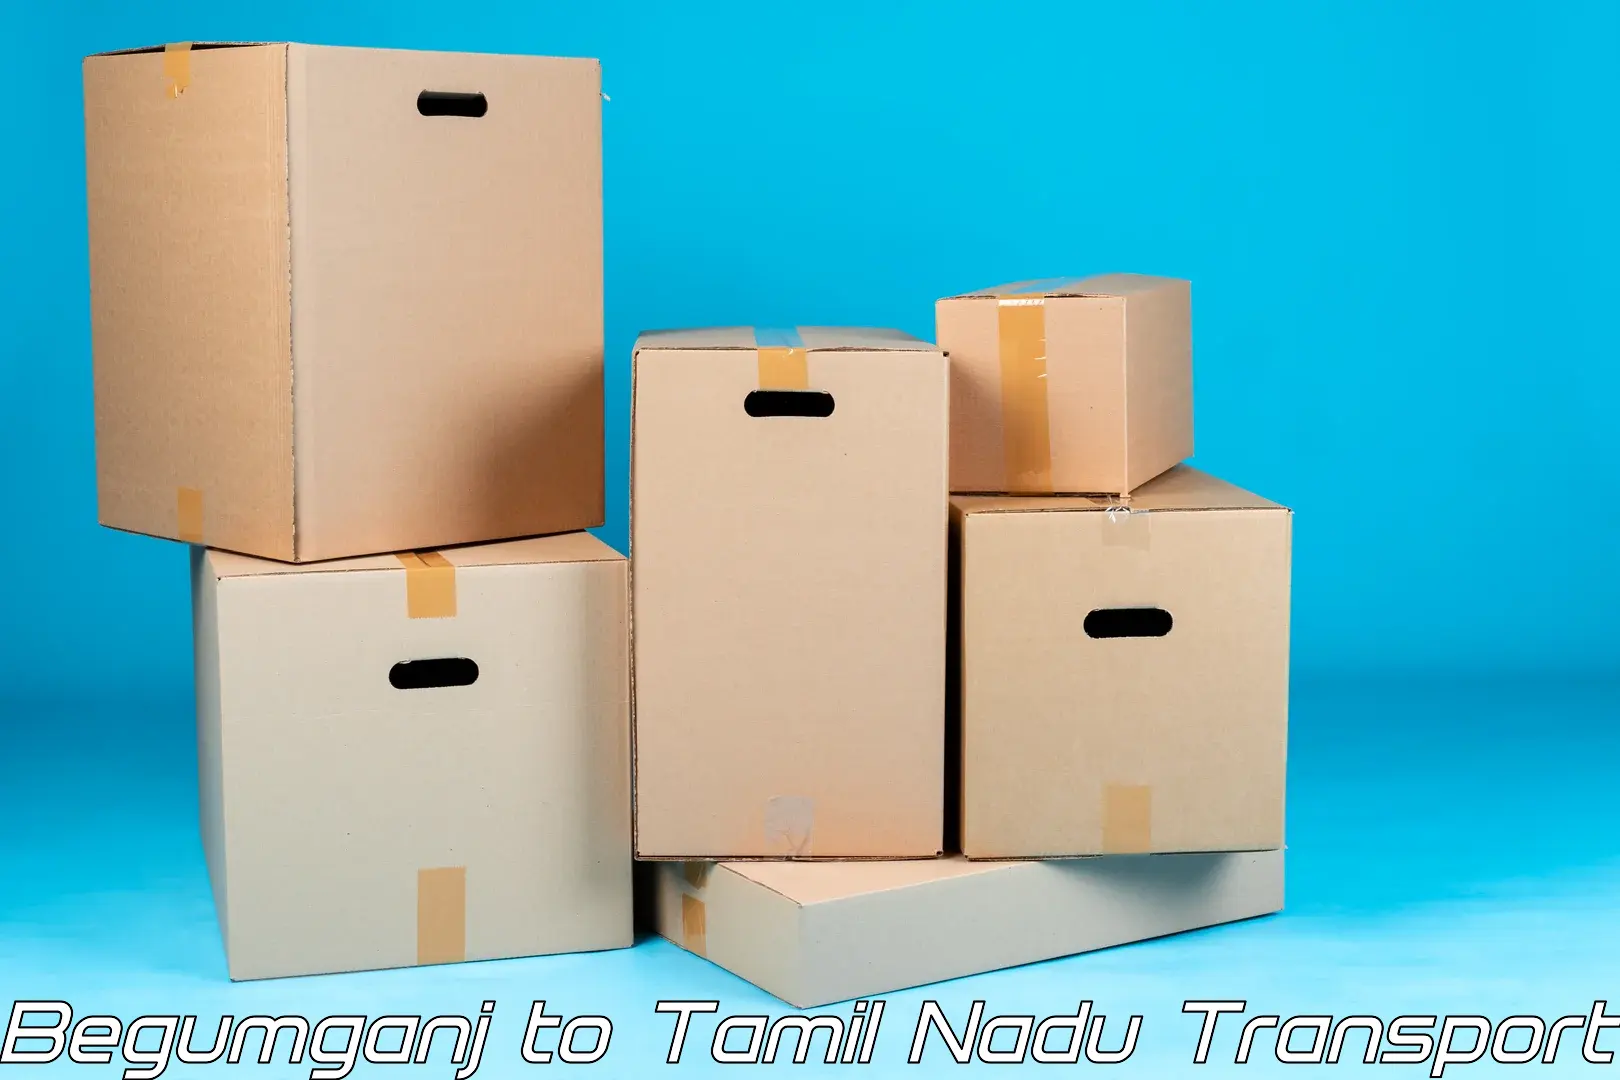 Package delivery services Begumganj to Ambasamudram